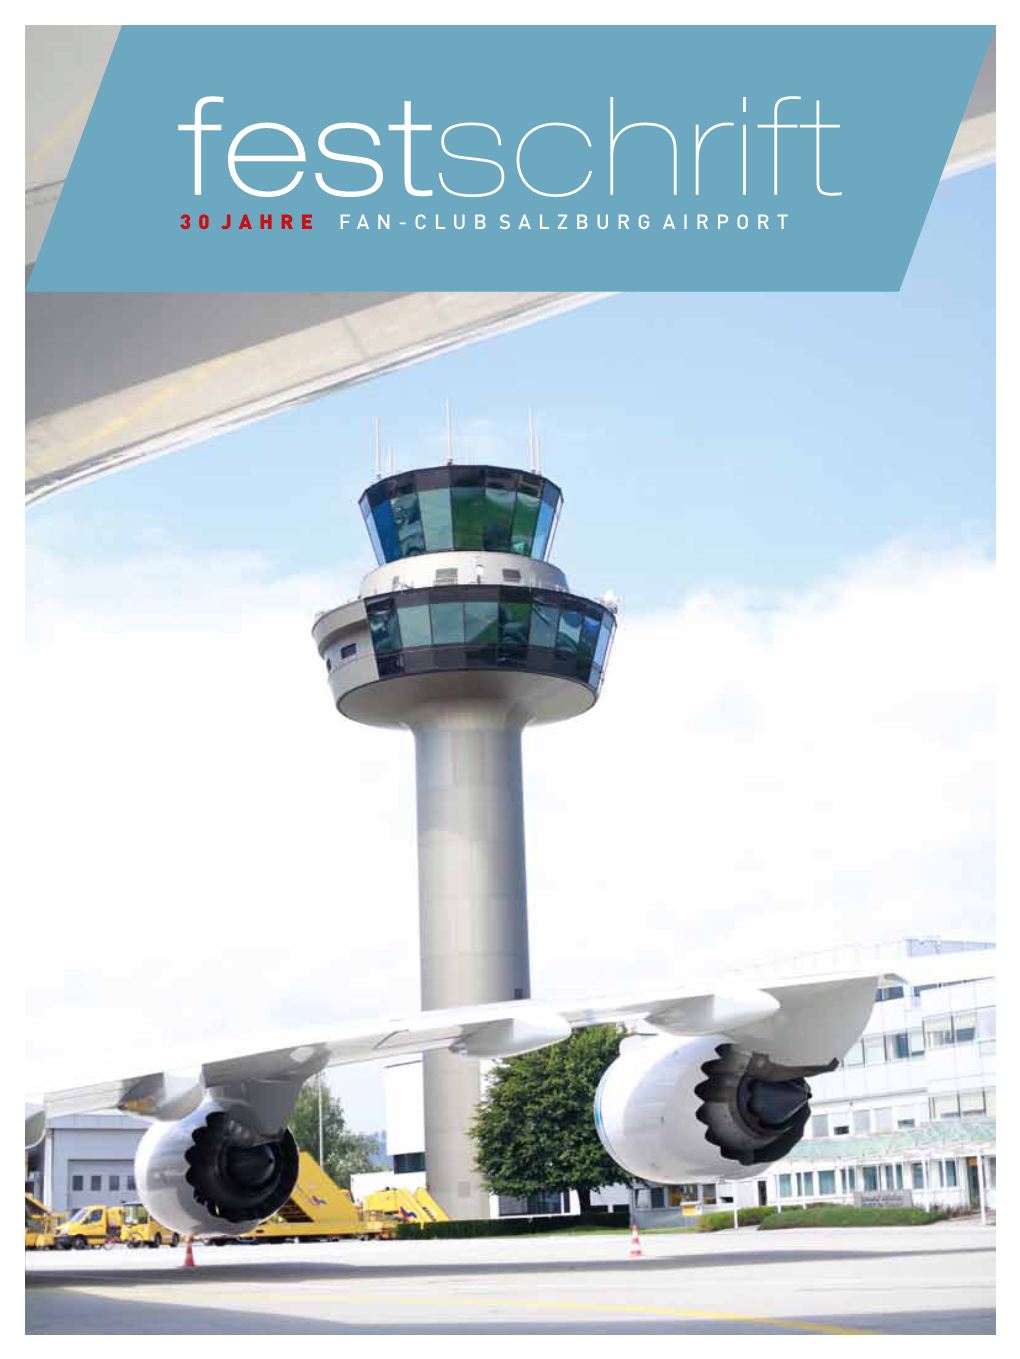 Festschrift 30 Jahre FAN-CLUB Salzburg Airport 30 Jahre Fan-Club Salzburg Airport